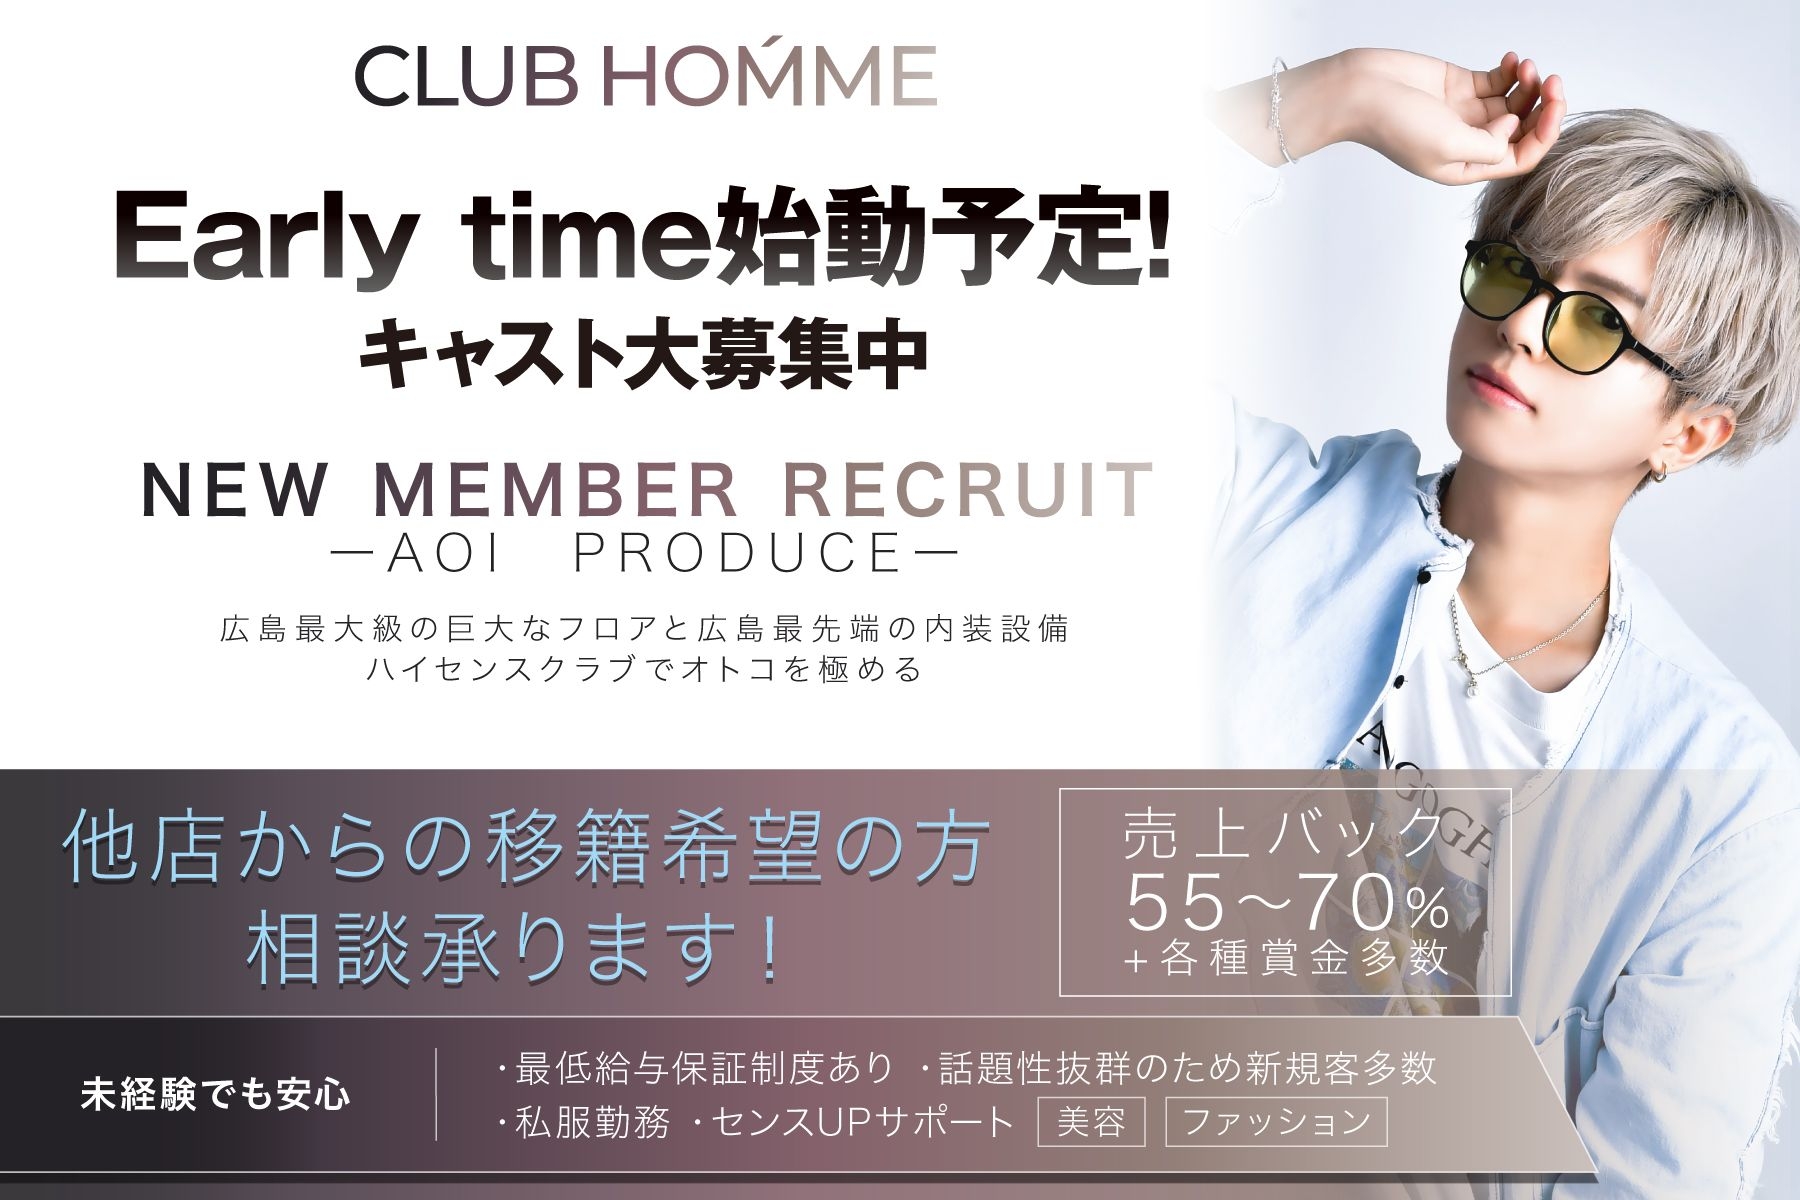 広島ホストクラブのclub Homme ナイトワーク求人情報 Willist ウィリスト スマホ版 広島での夜遊びキャバクラ ホスト情報など